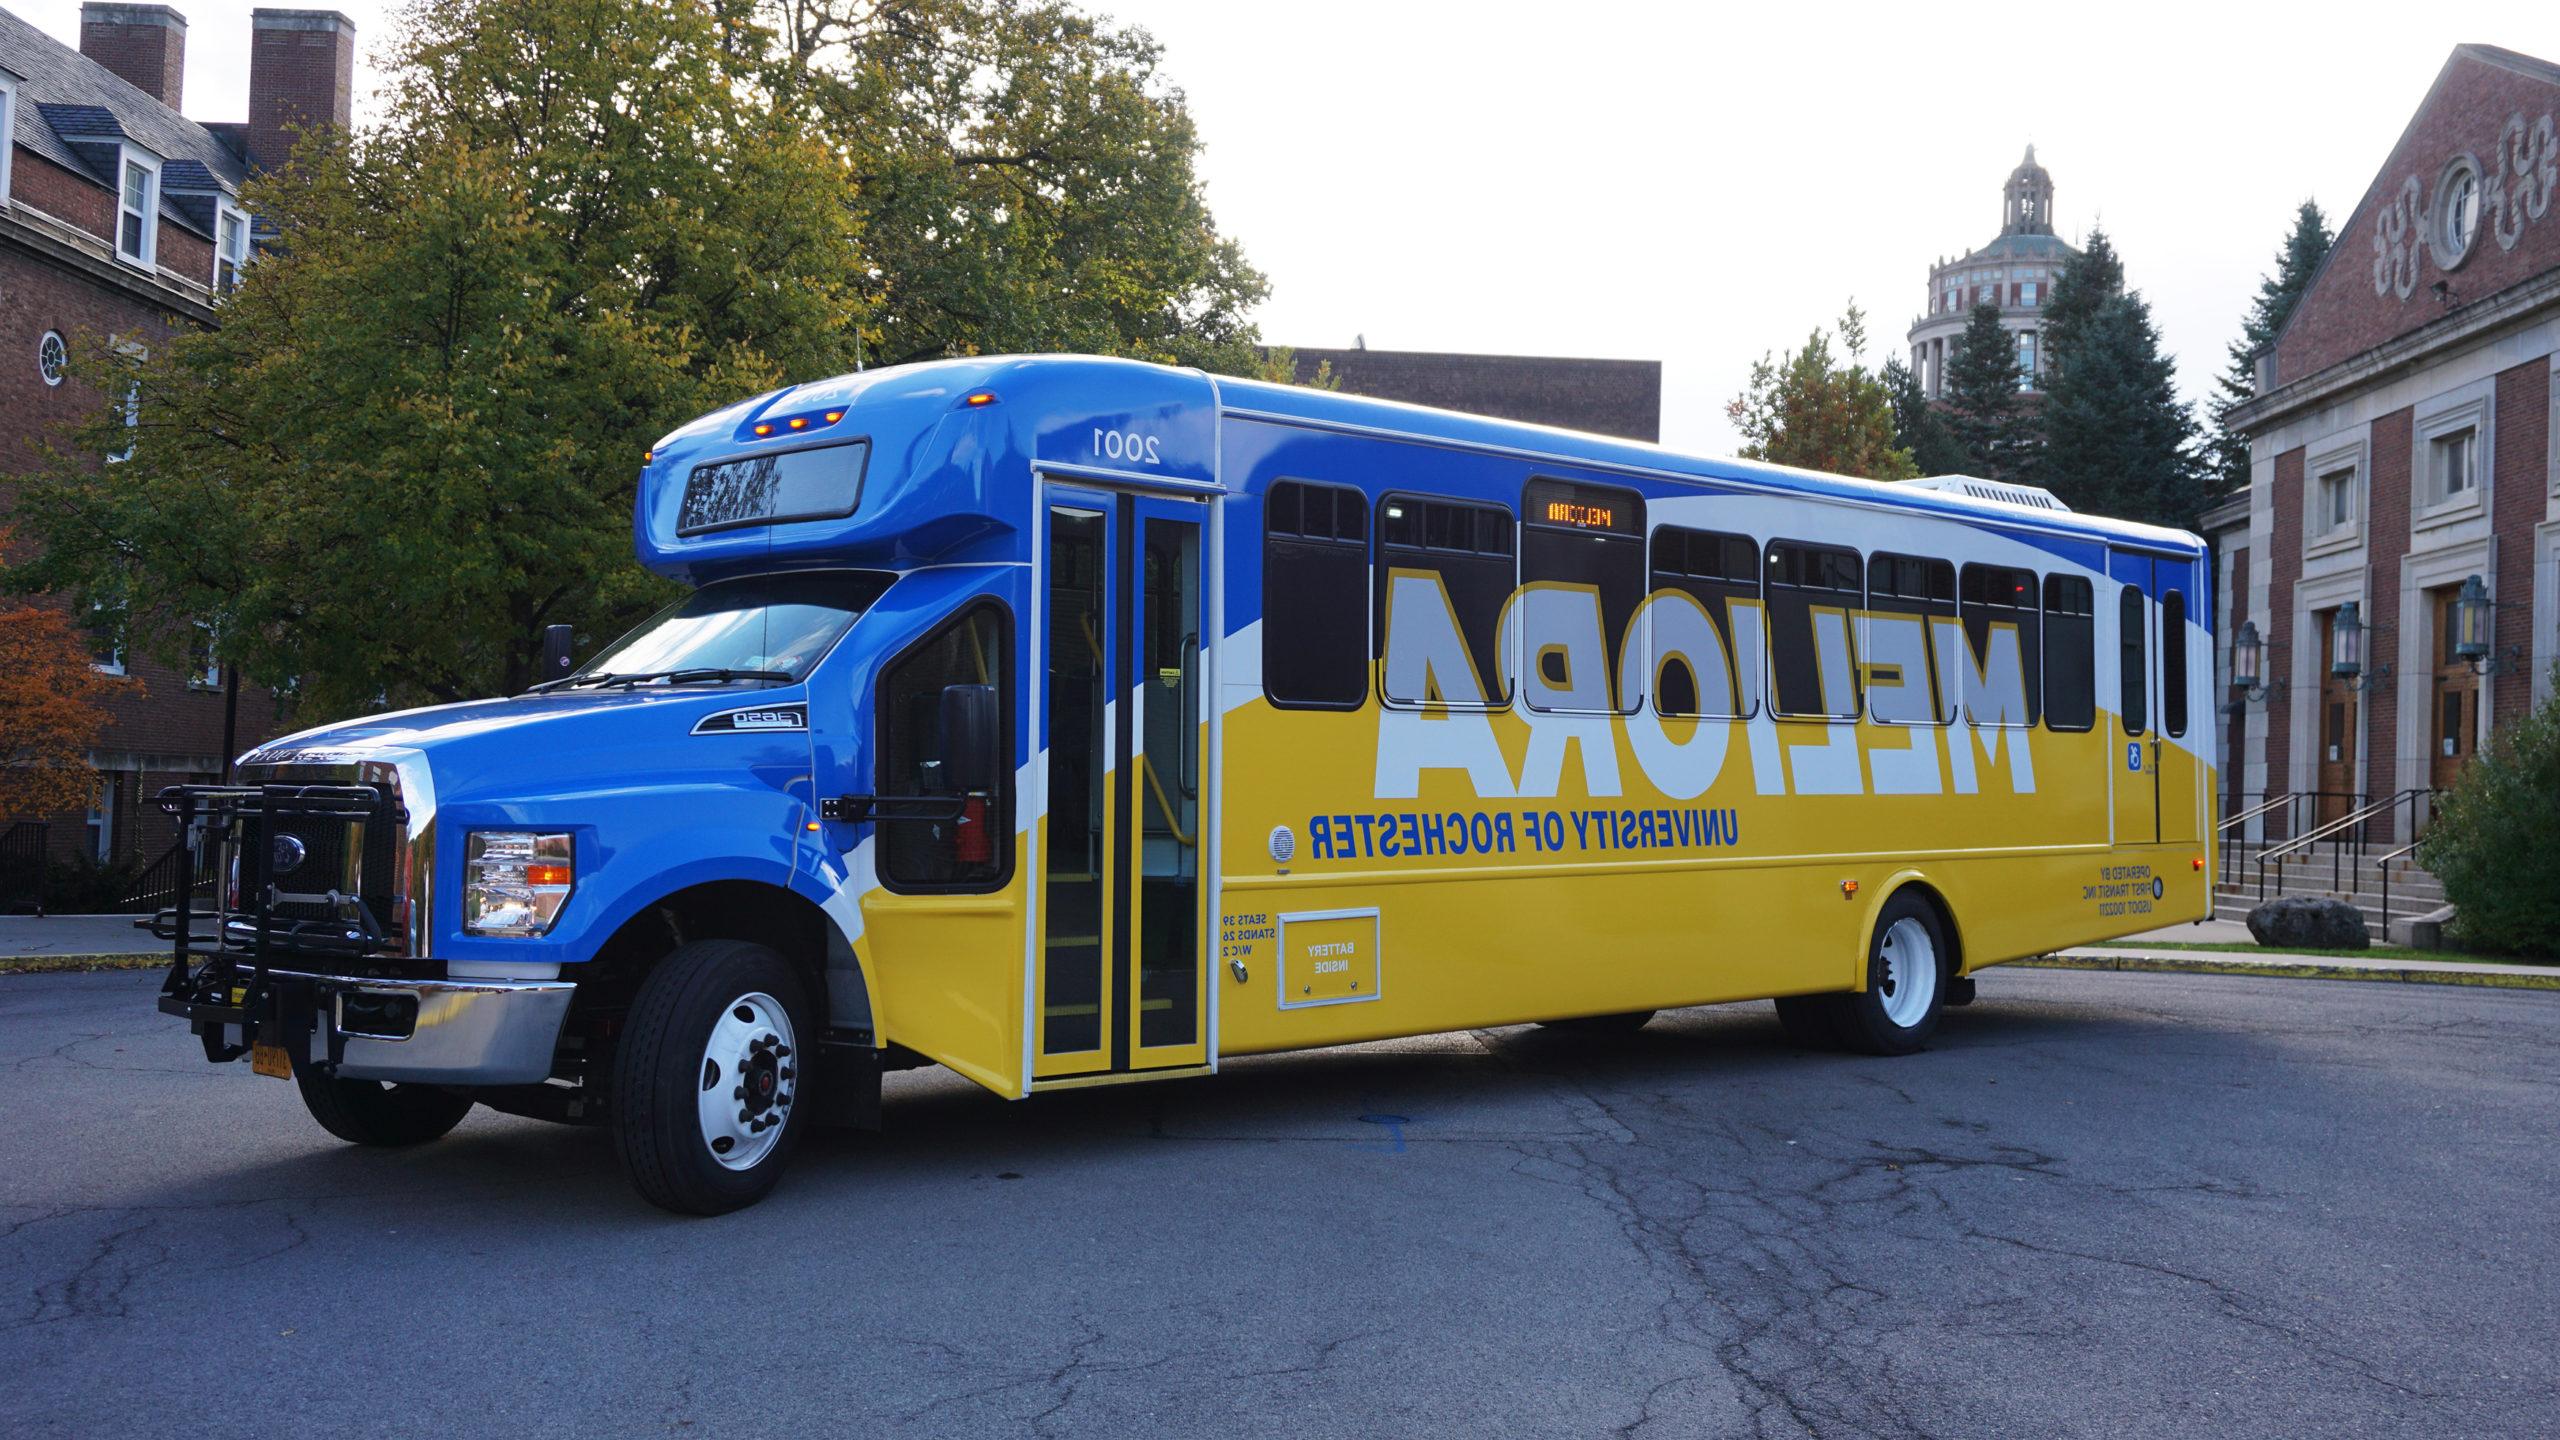 澳门威尼斯人网上赌场 shuttle bus with new blue and yellow wrap